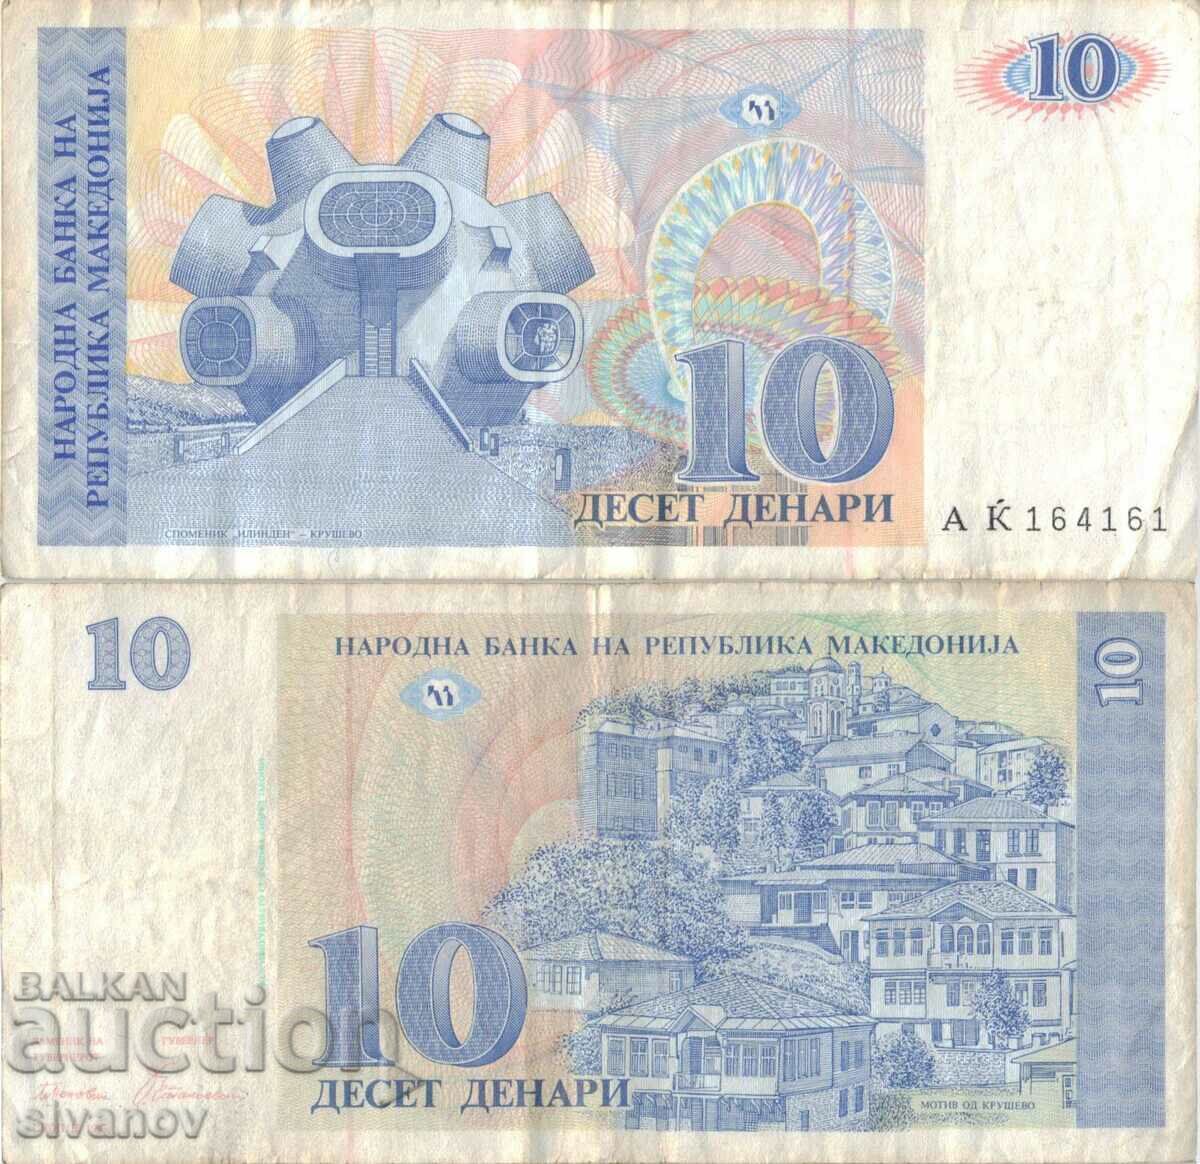 Μακεδονία 10 denar 1993 τραπεζογραμμάτιο #5214